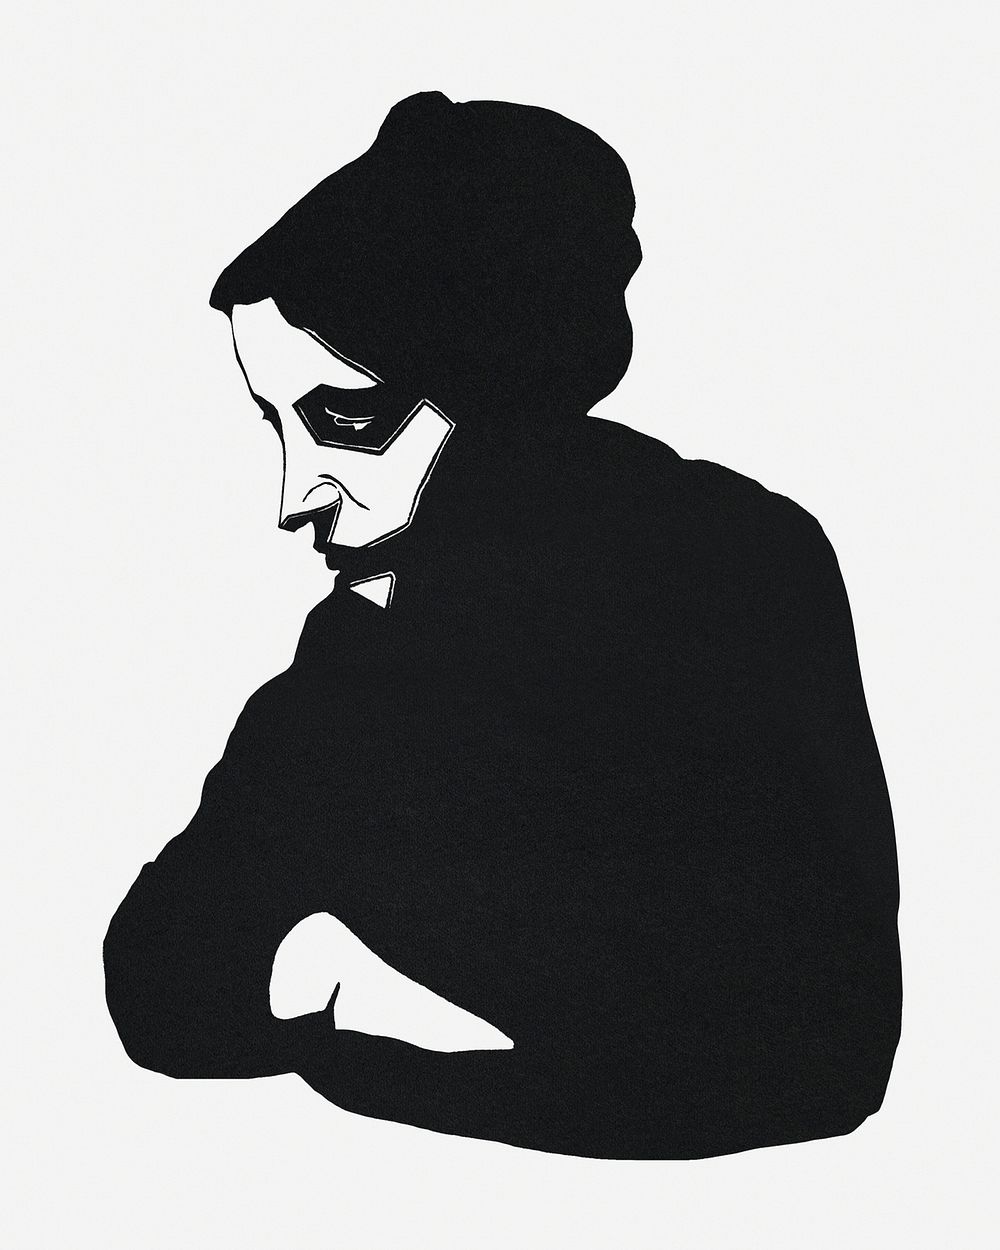 Vintage woman portrait art print, remix from artworks by Samuel Jessurun de Mesquita